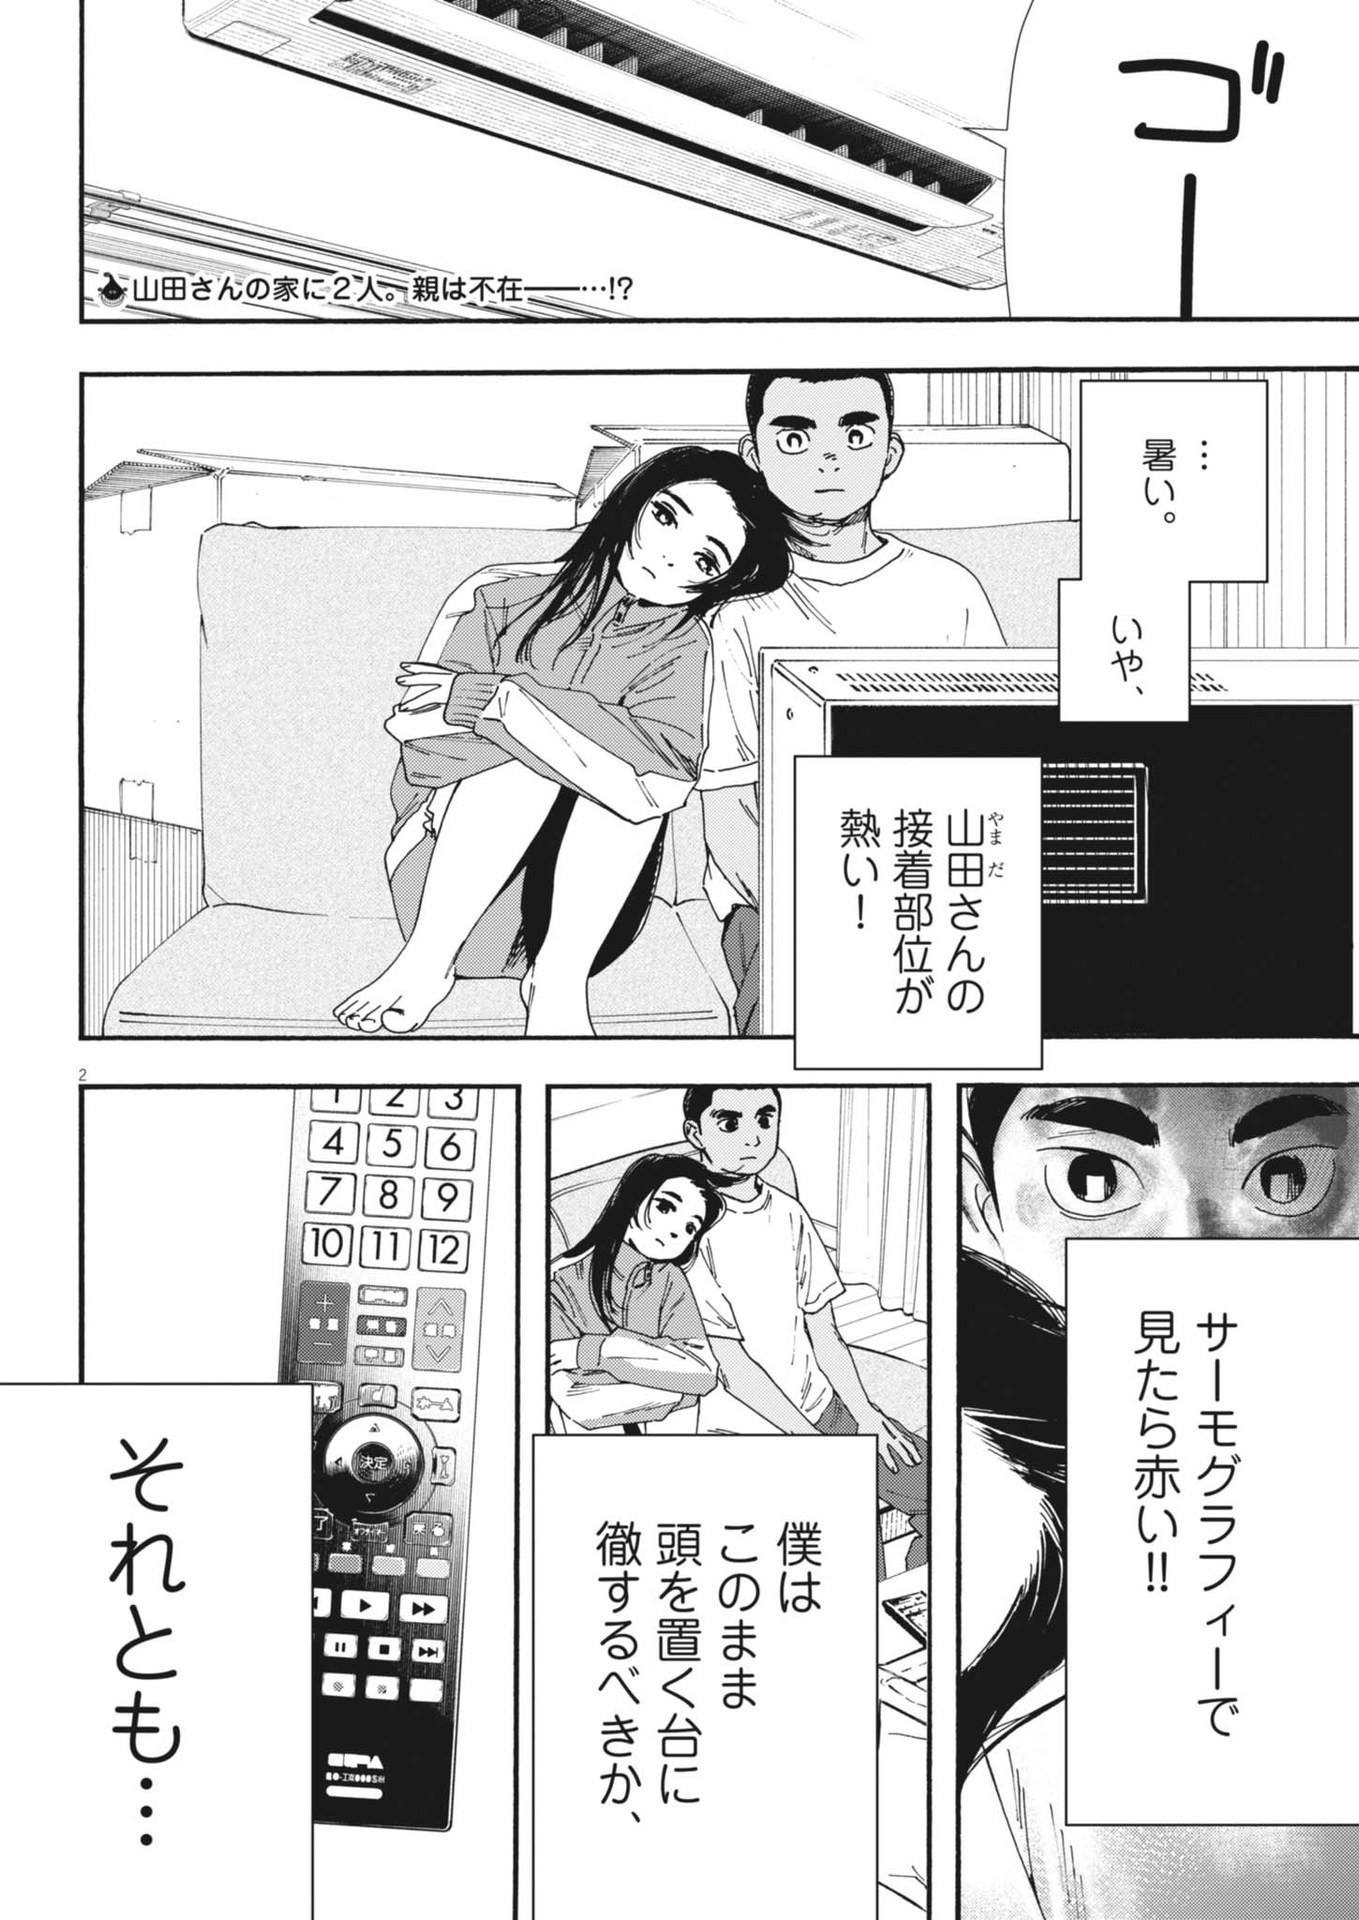 Hoshino-kun, Shitagatte! - Chapter 9 - Page 2